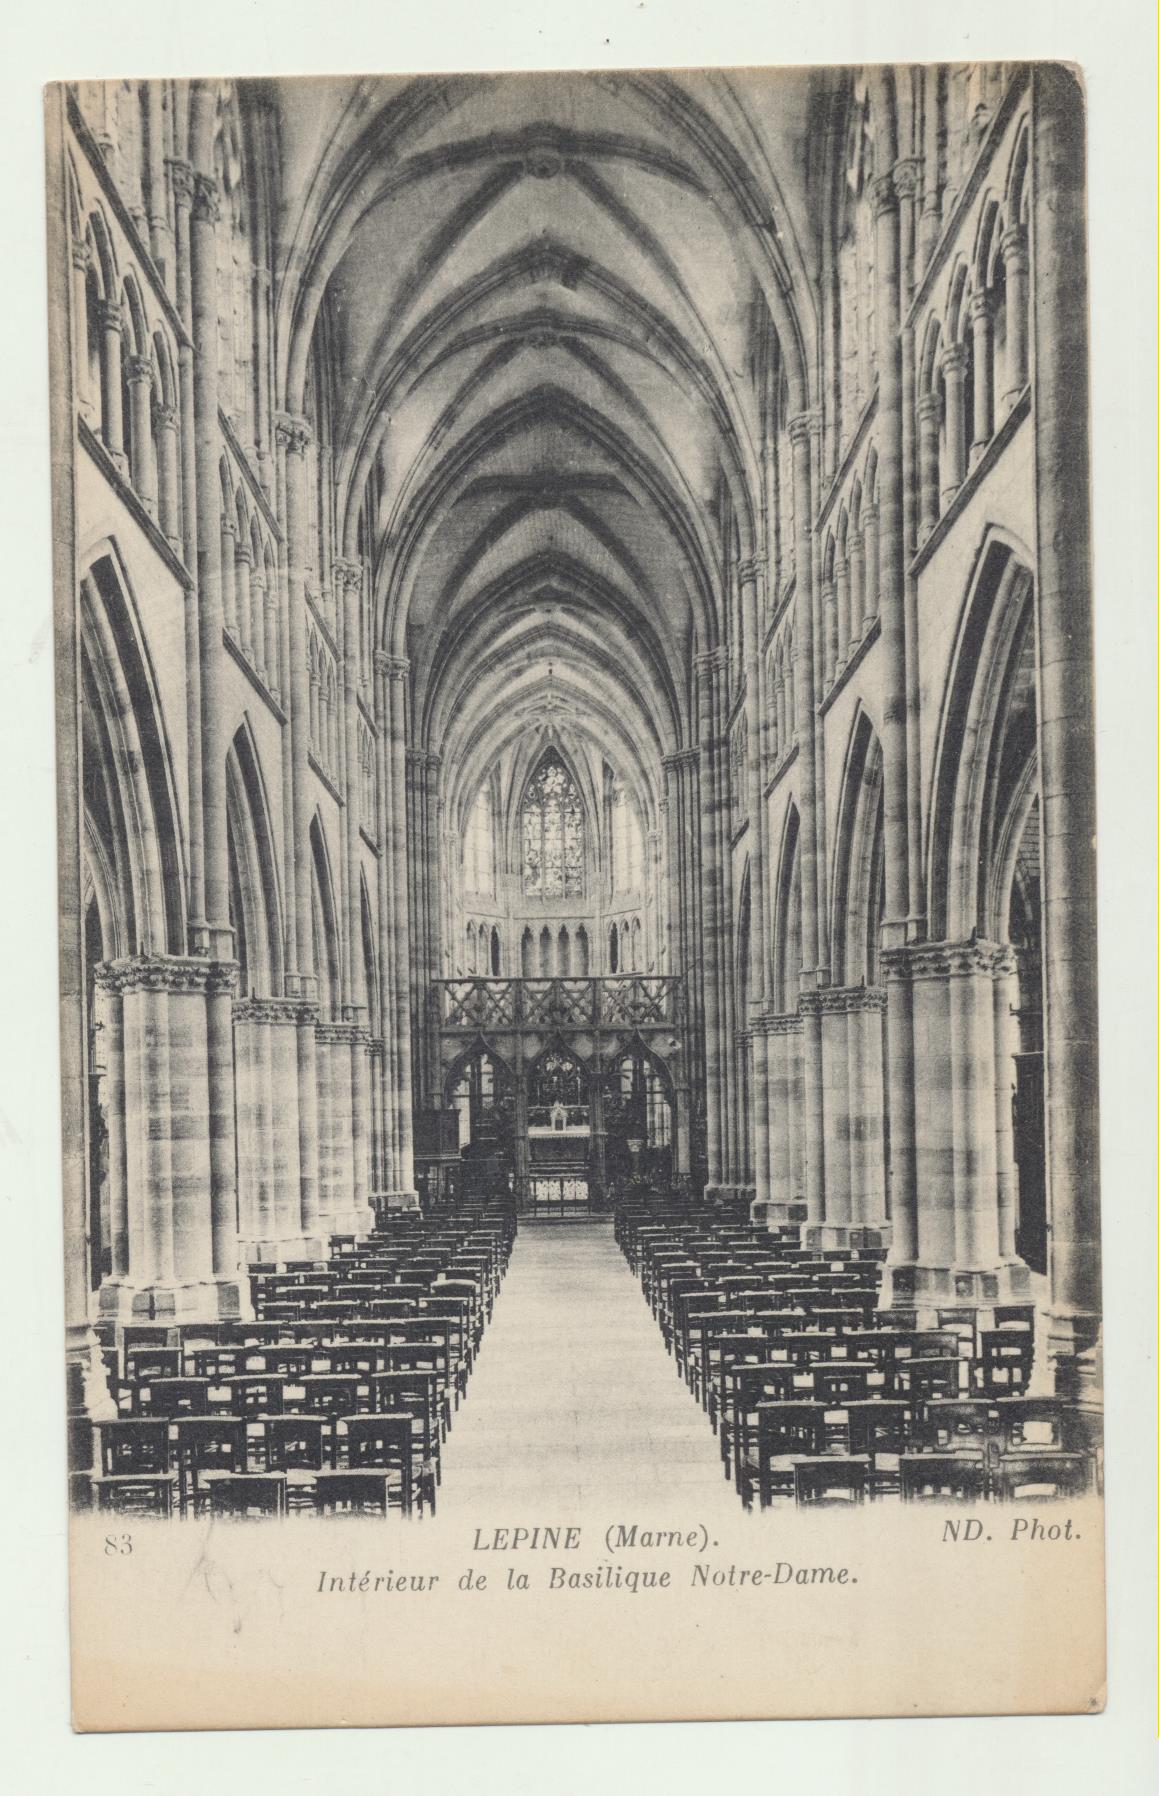 Lepine (Marne). Interieur de la Basilique Notre-Dame